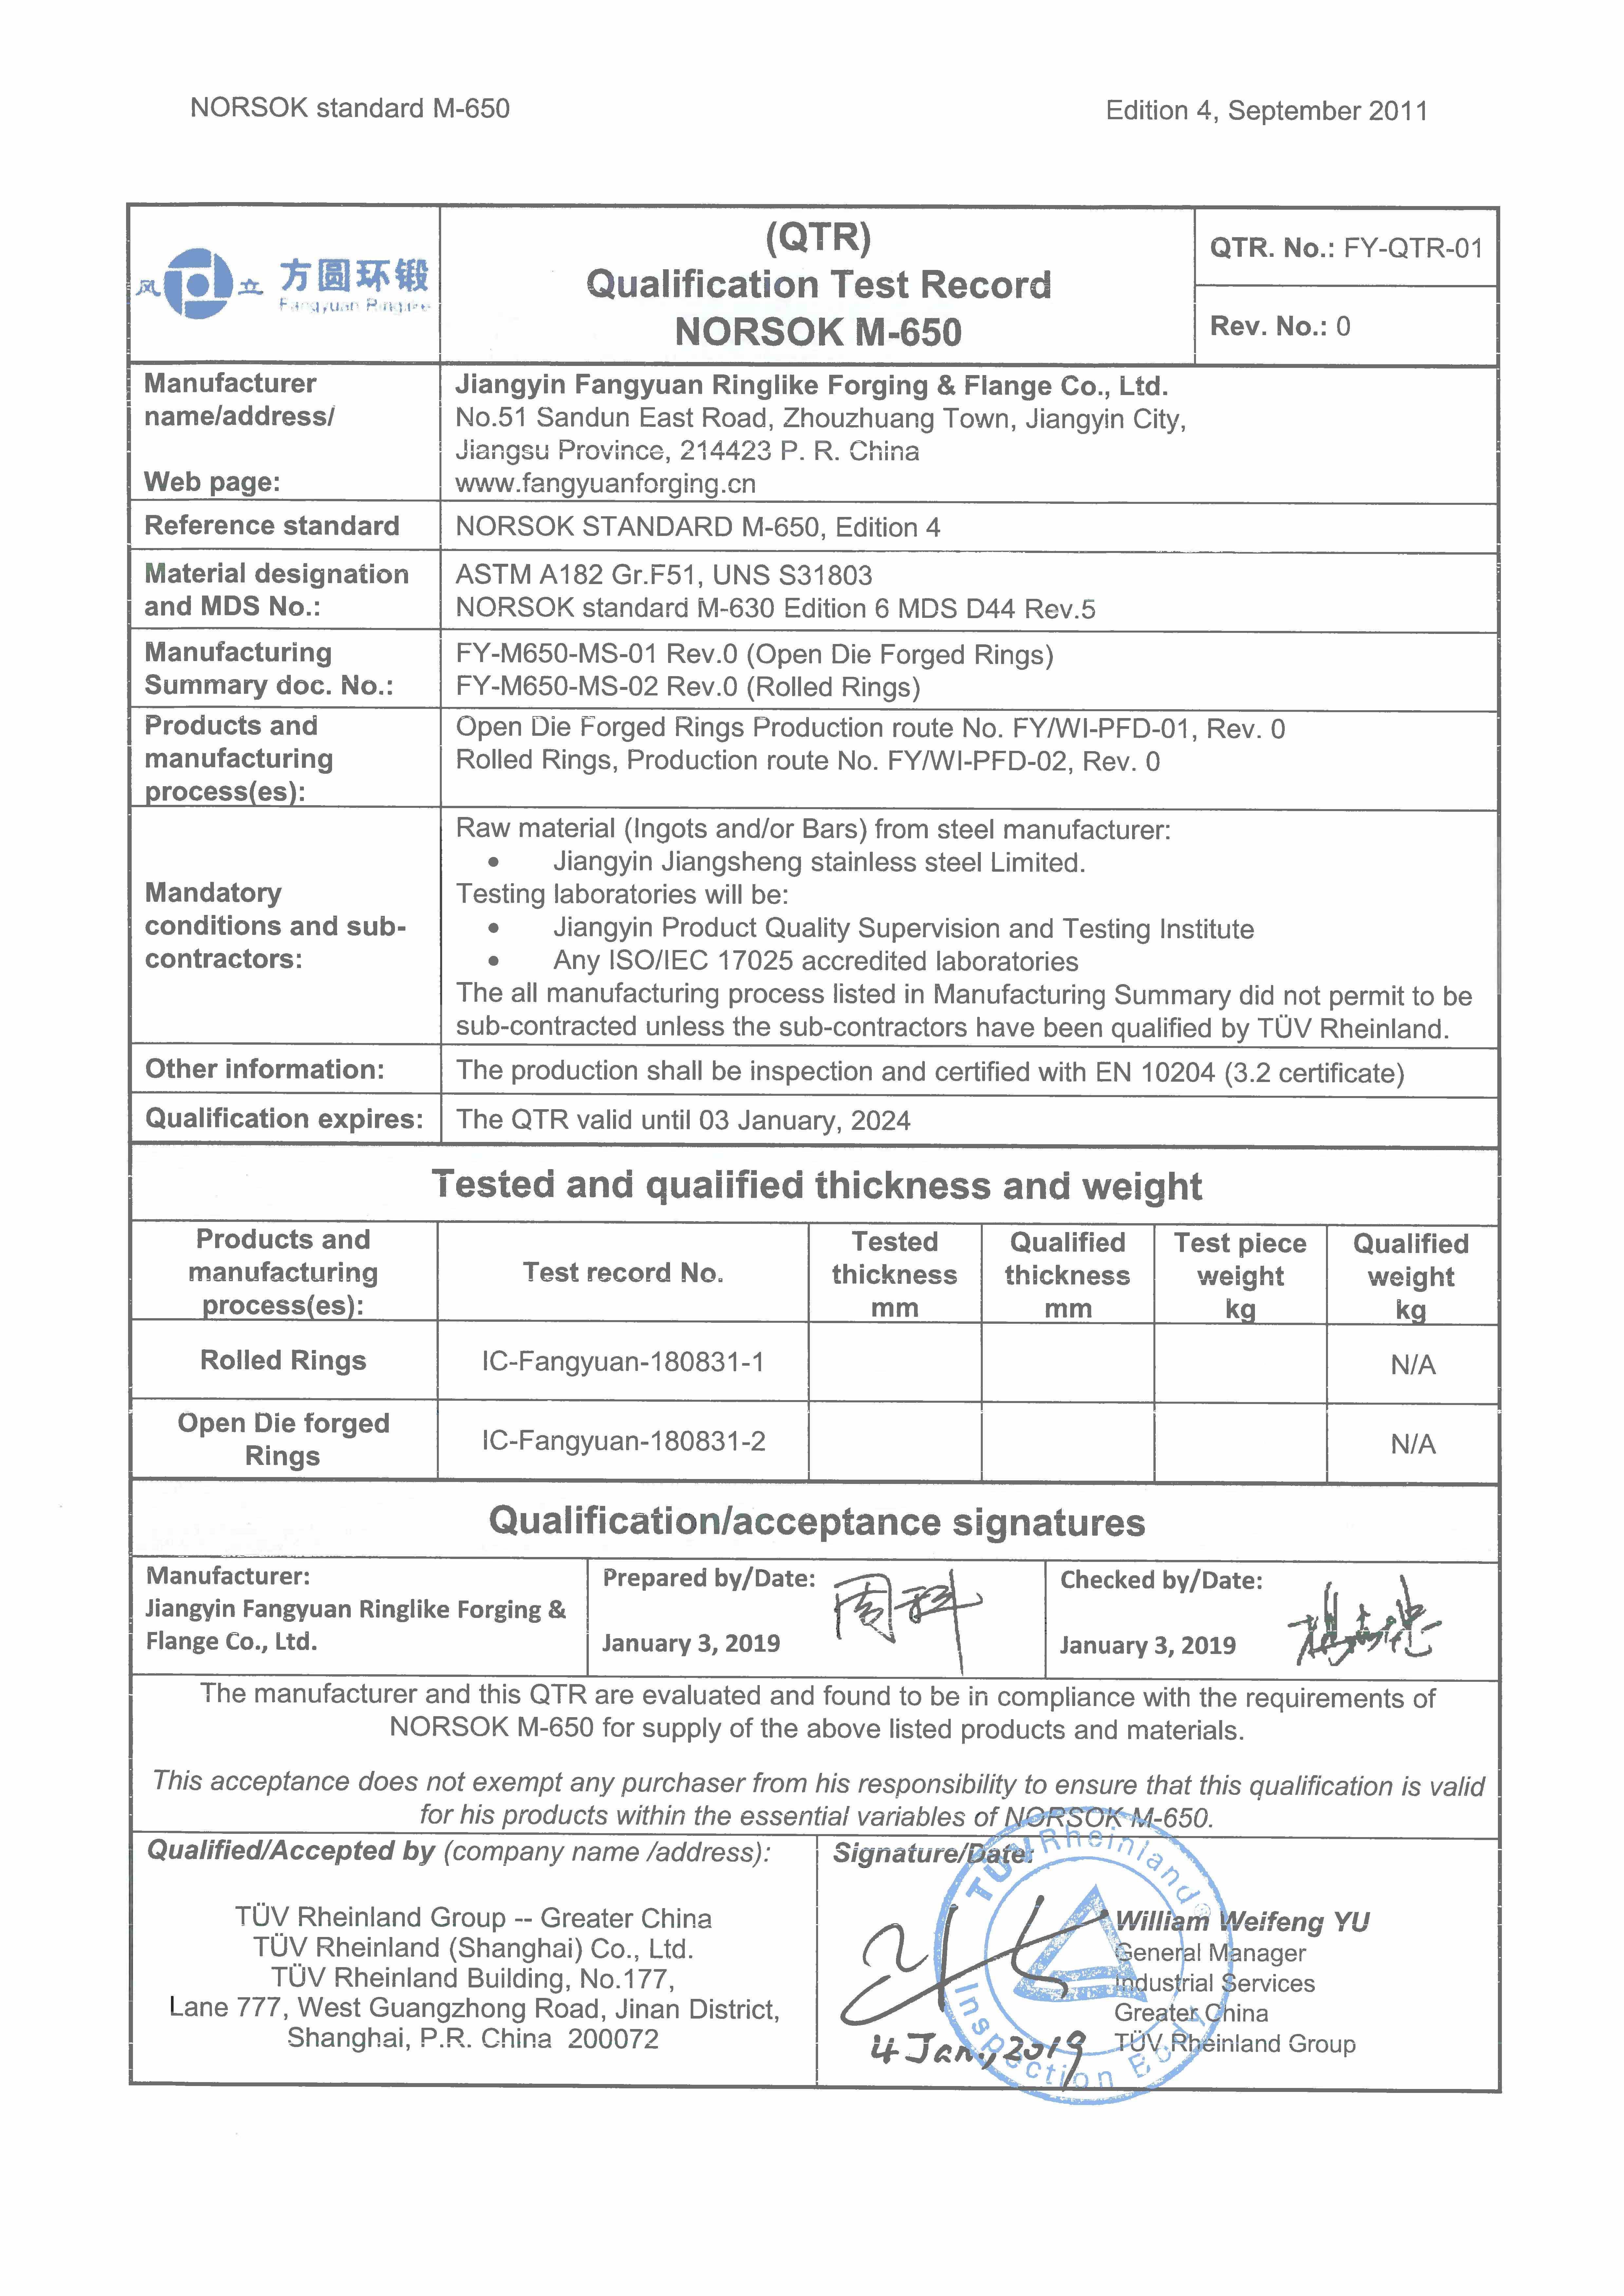 শরীর ও বন্ধন নোরস্ক এম 650, পেড 2014/68 / ইইউ, উপাদান এএসটিএম F51, এএসটিএম F53